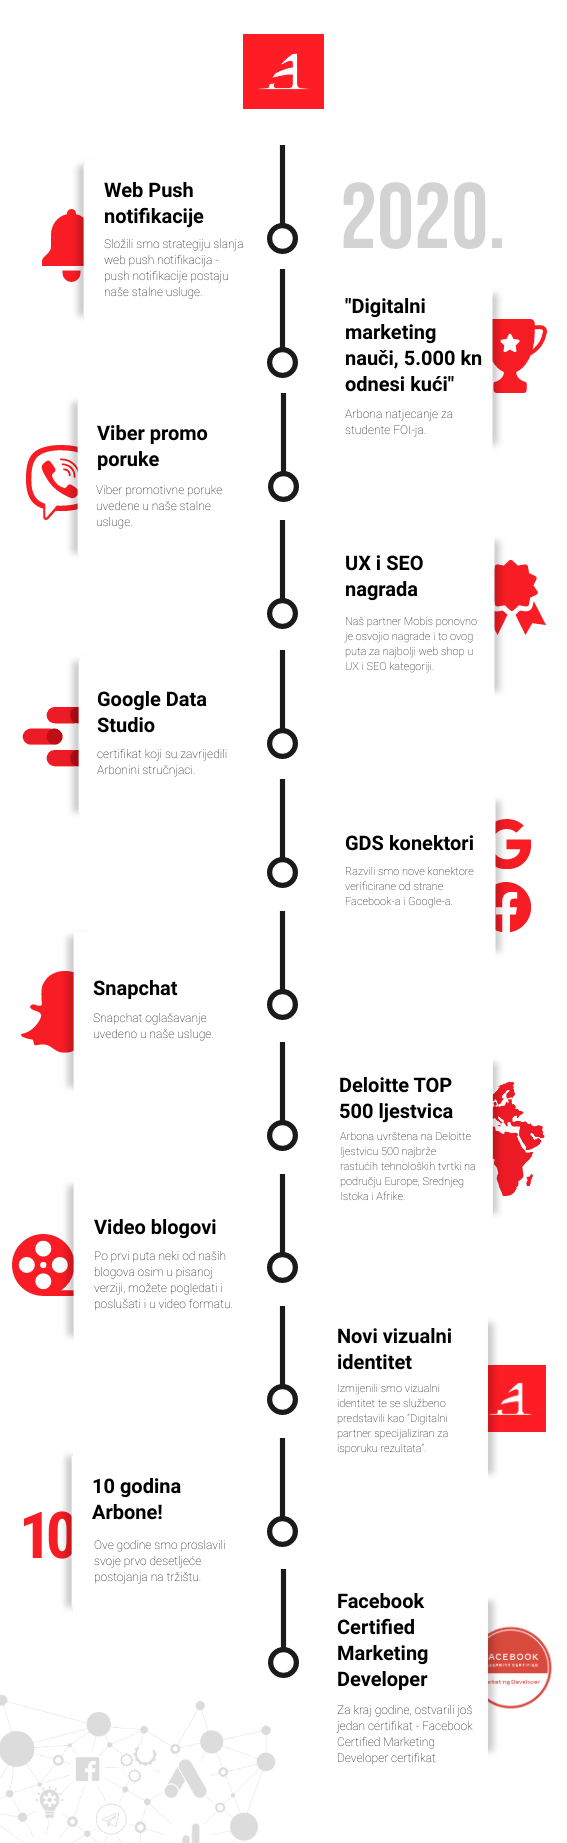 Infografika Arbone za 2020. godinu, prikazujući ključne statistike, trendove i uspjehe tvrtke